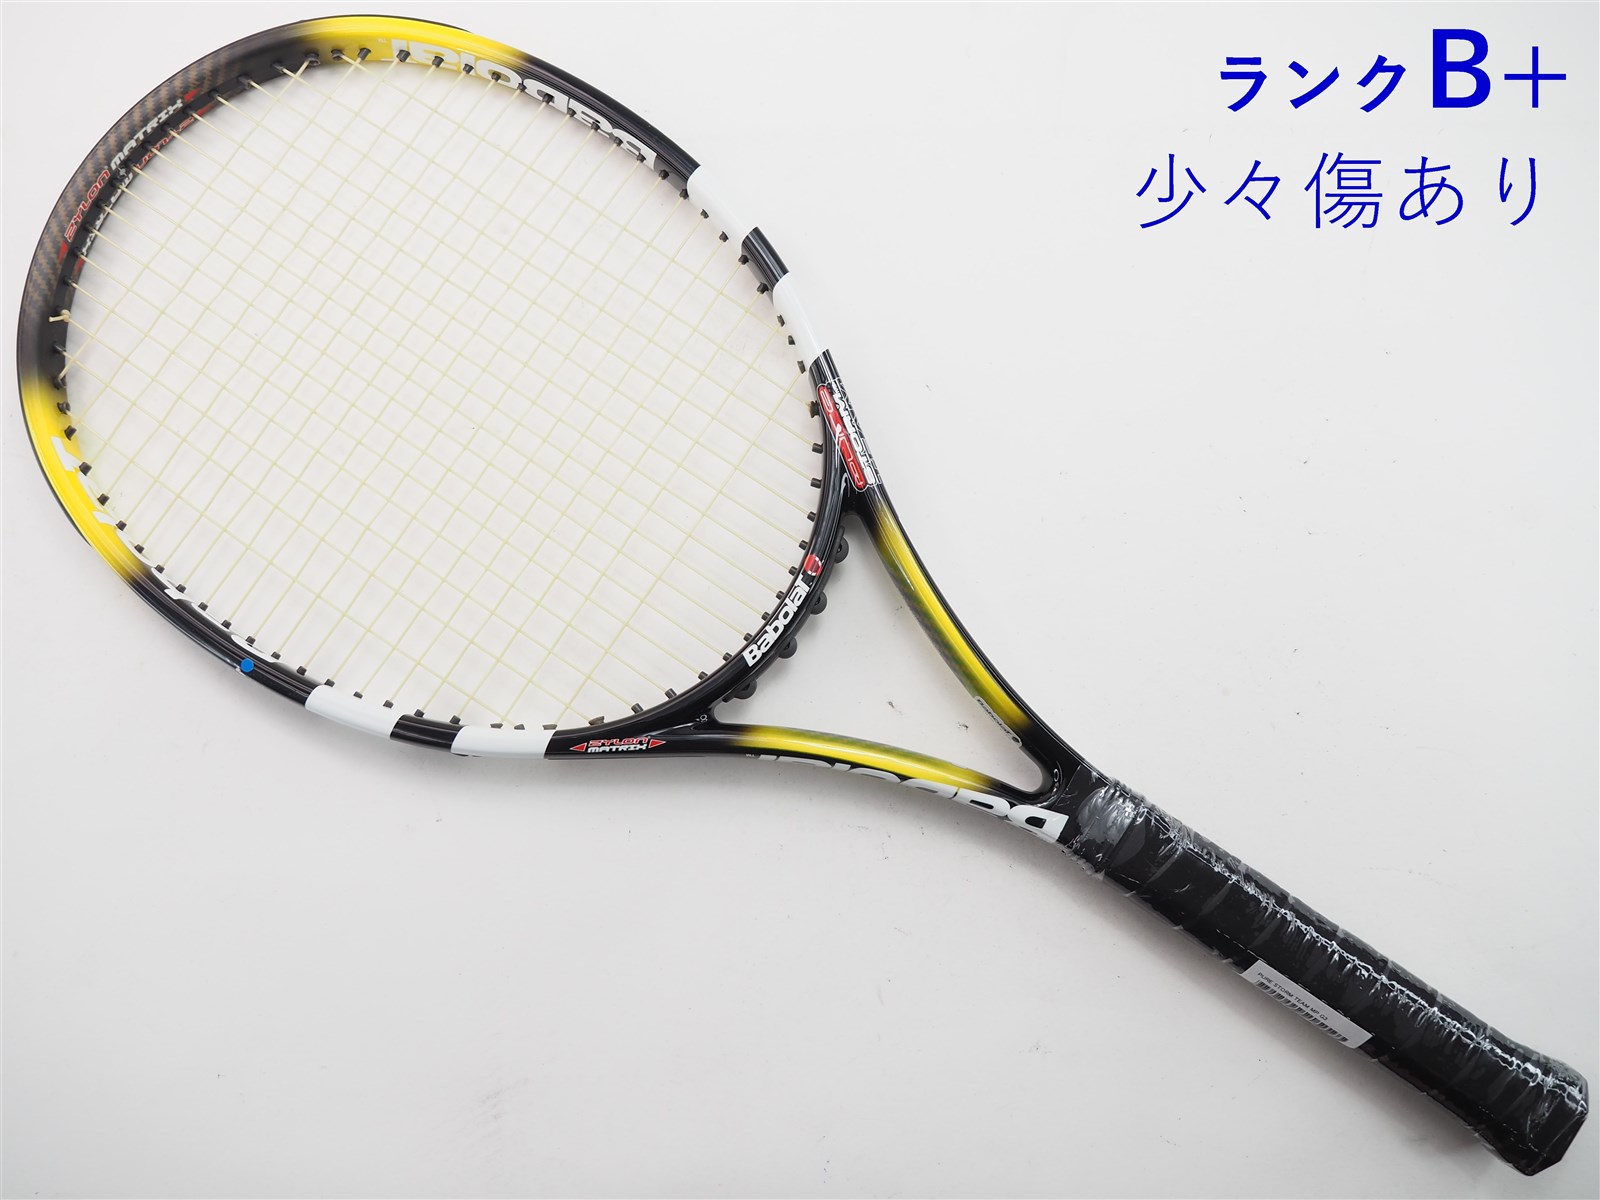 0870 バボラ BabolaT ピュアストームツアープラス 硬式テニスラケット ...